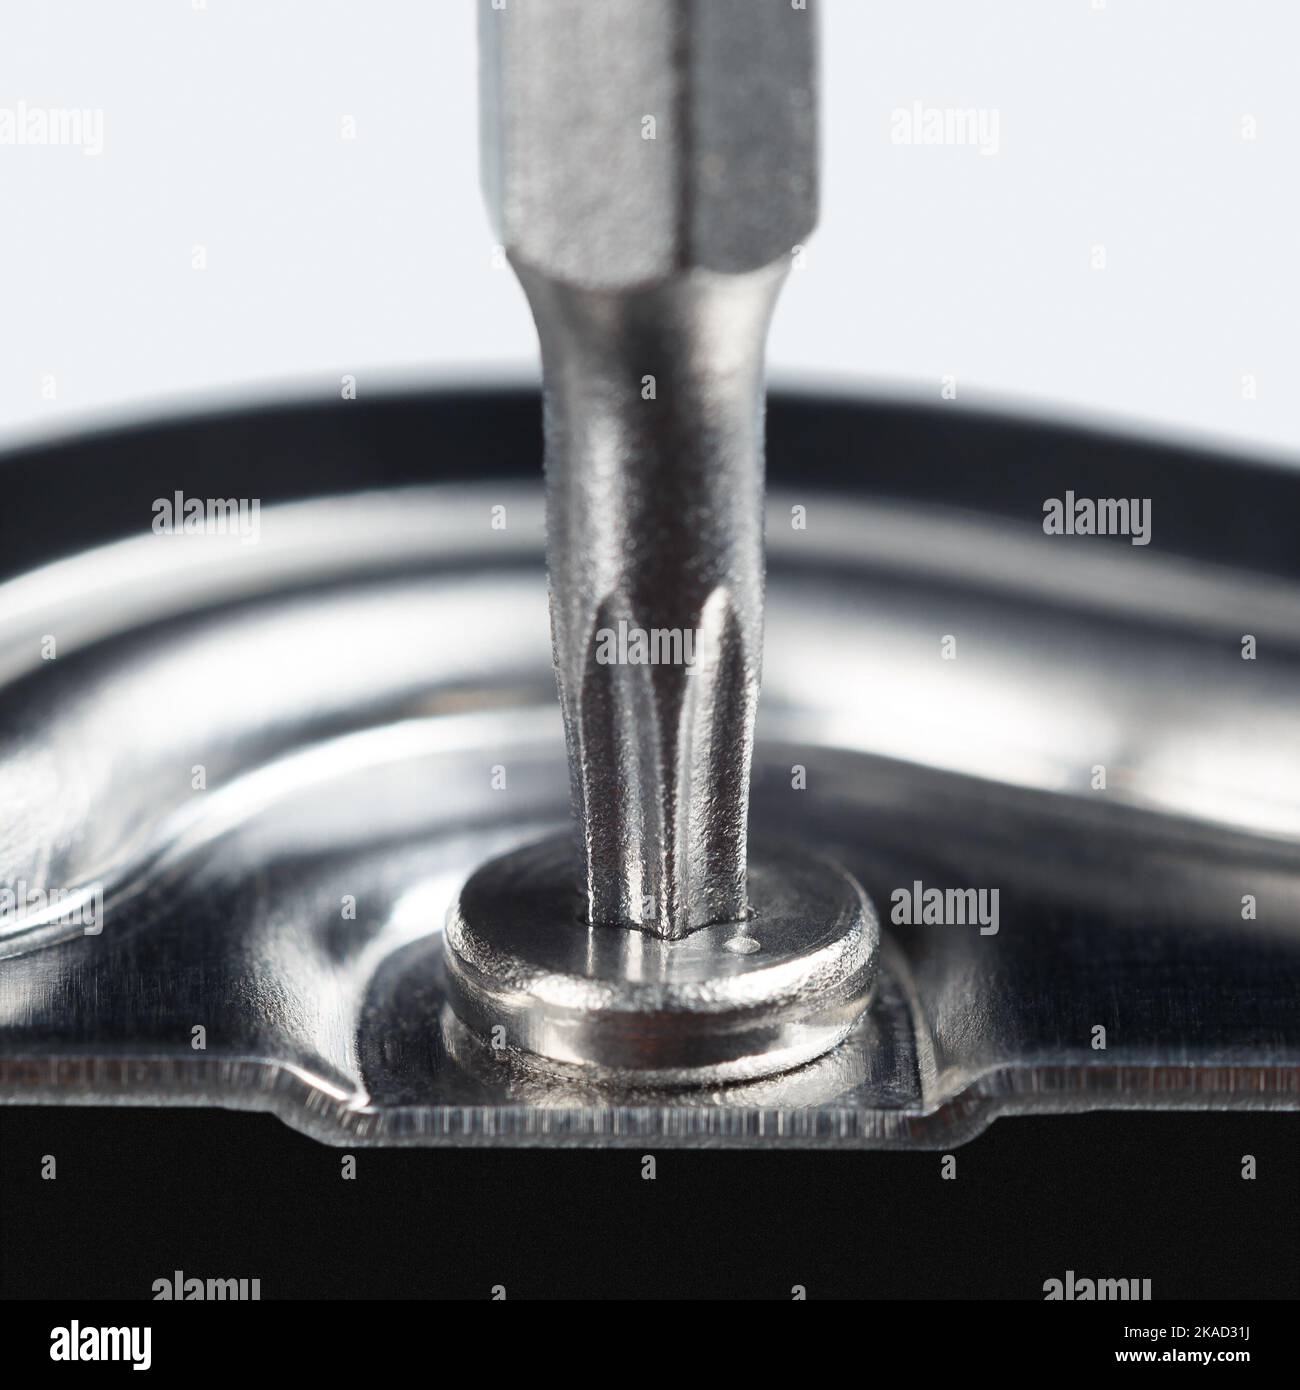 In die Schraube wird ein Schraubendreher mit einem Sternchen eingesetzt. Makrofotografie. Stockfoto